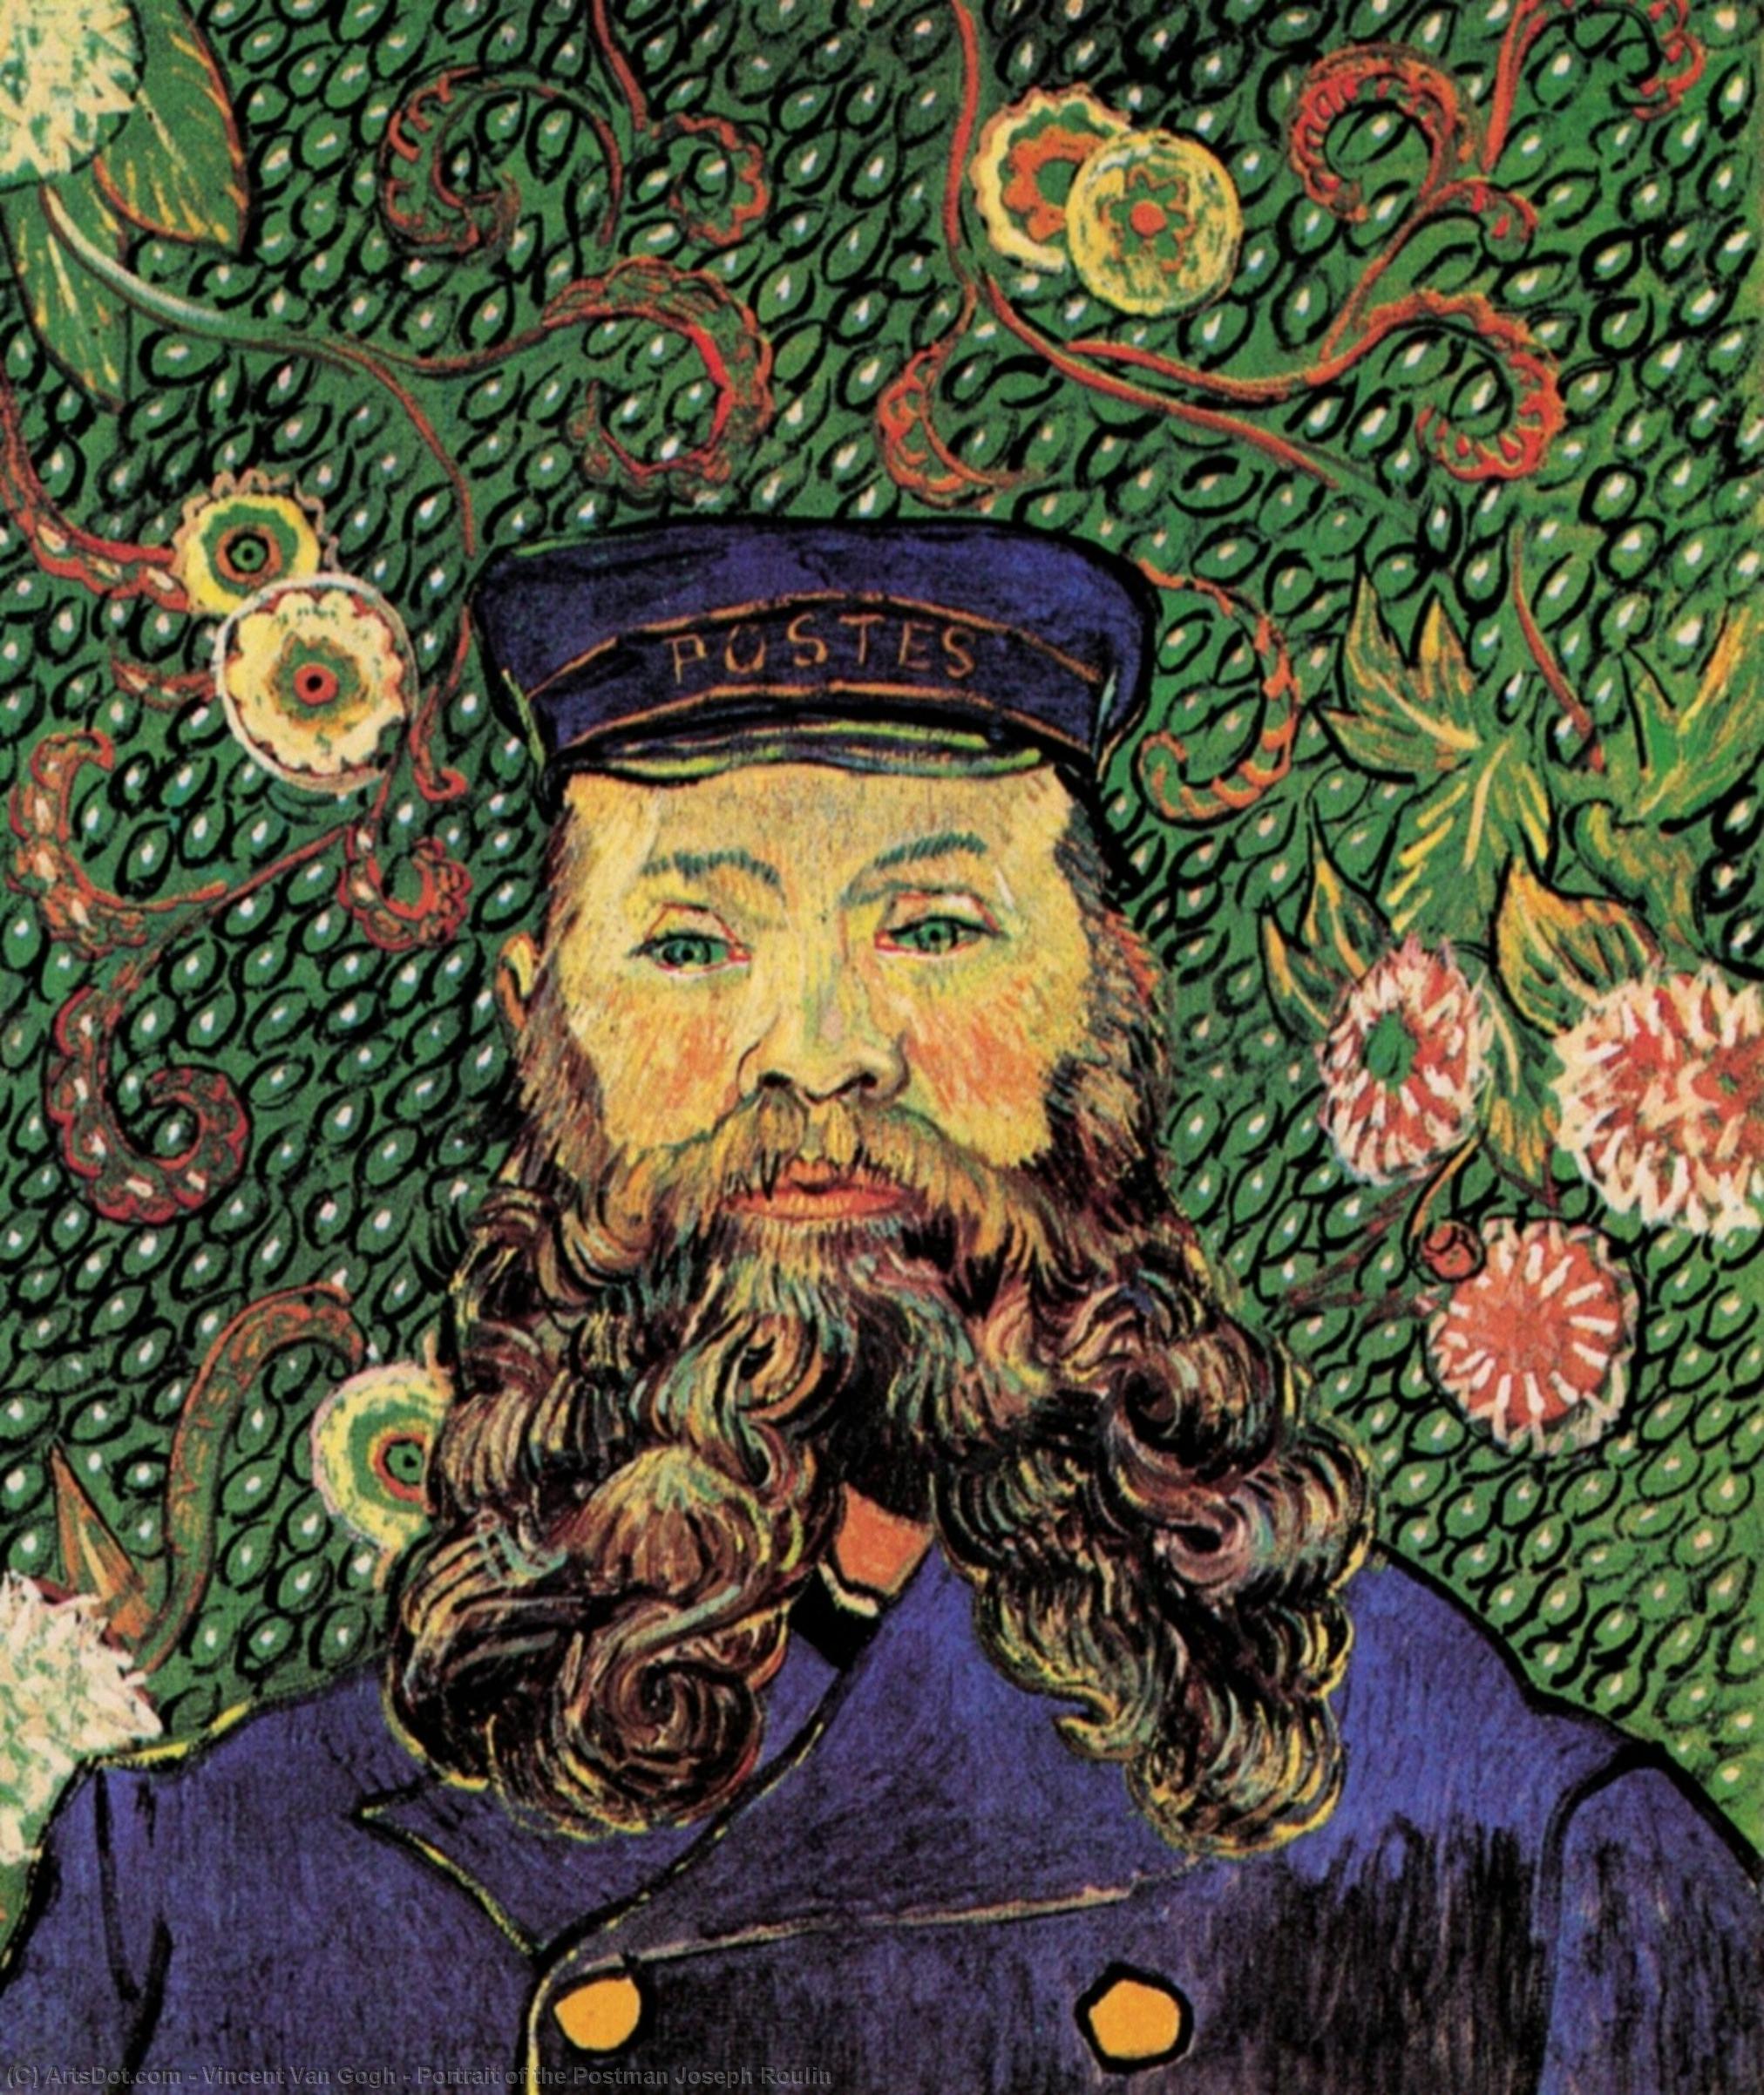 Acheter Reproductions D'art De Musée Portrait du facteur Joseph Roulin, 1889 de Vincent Van Gogh (1853-1890, Netherlands) | ArtsDot.com